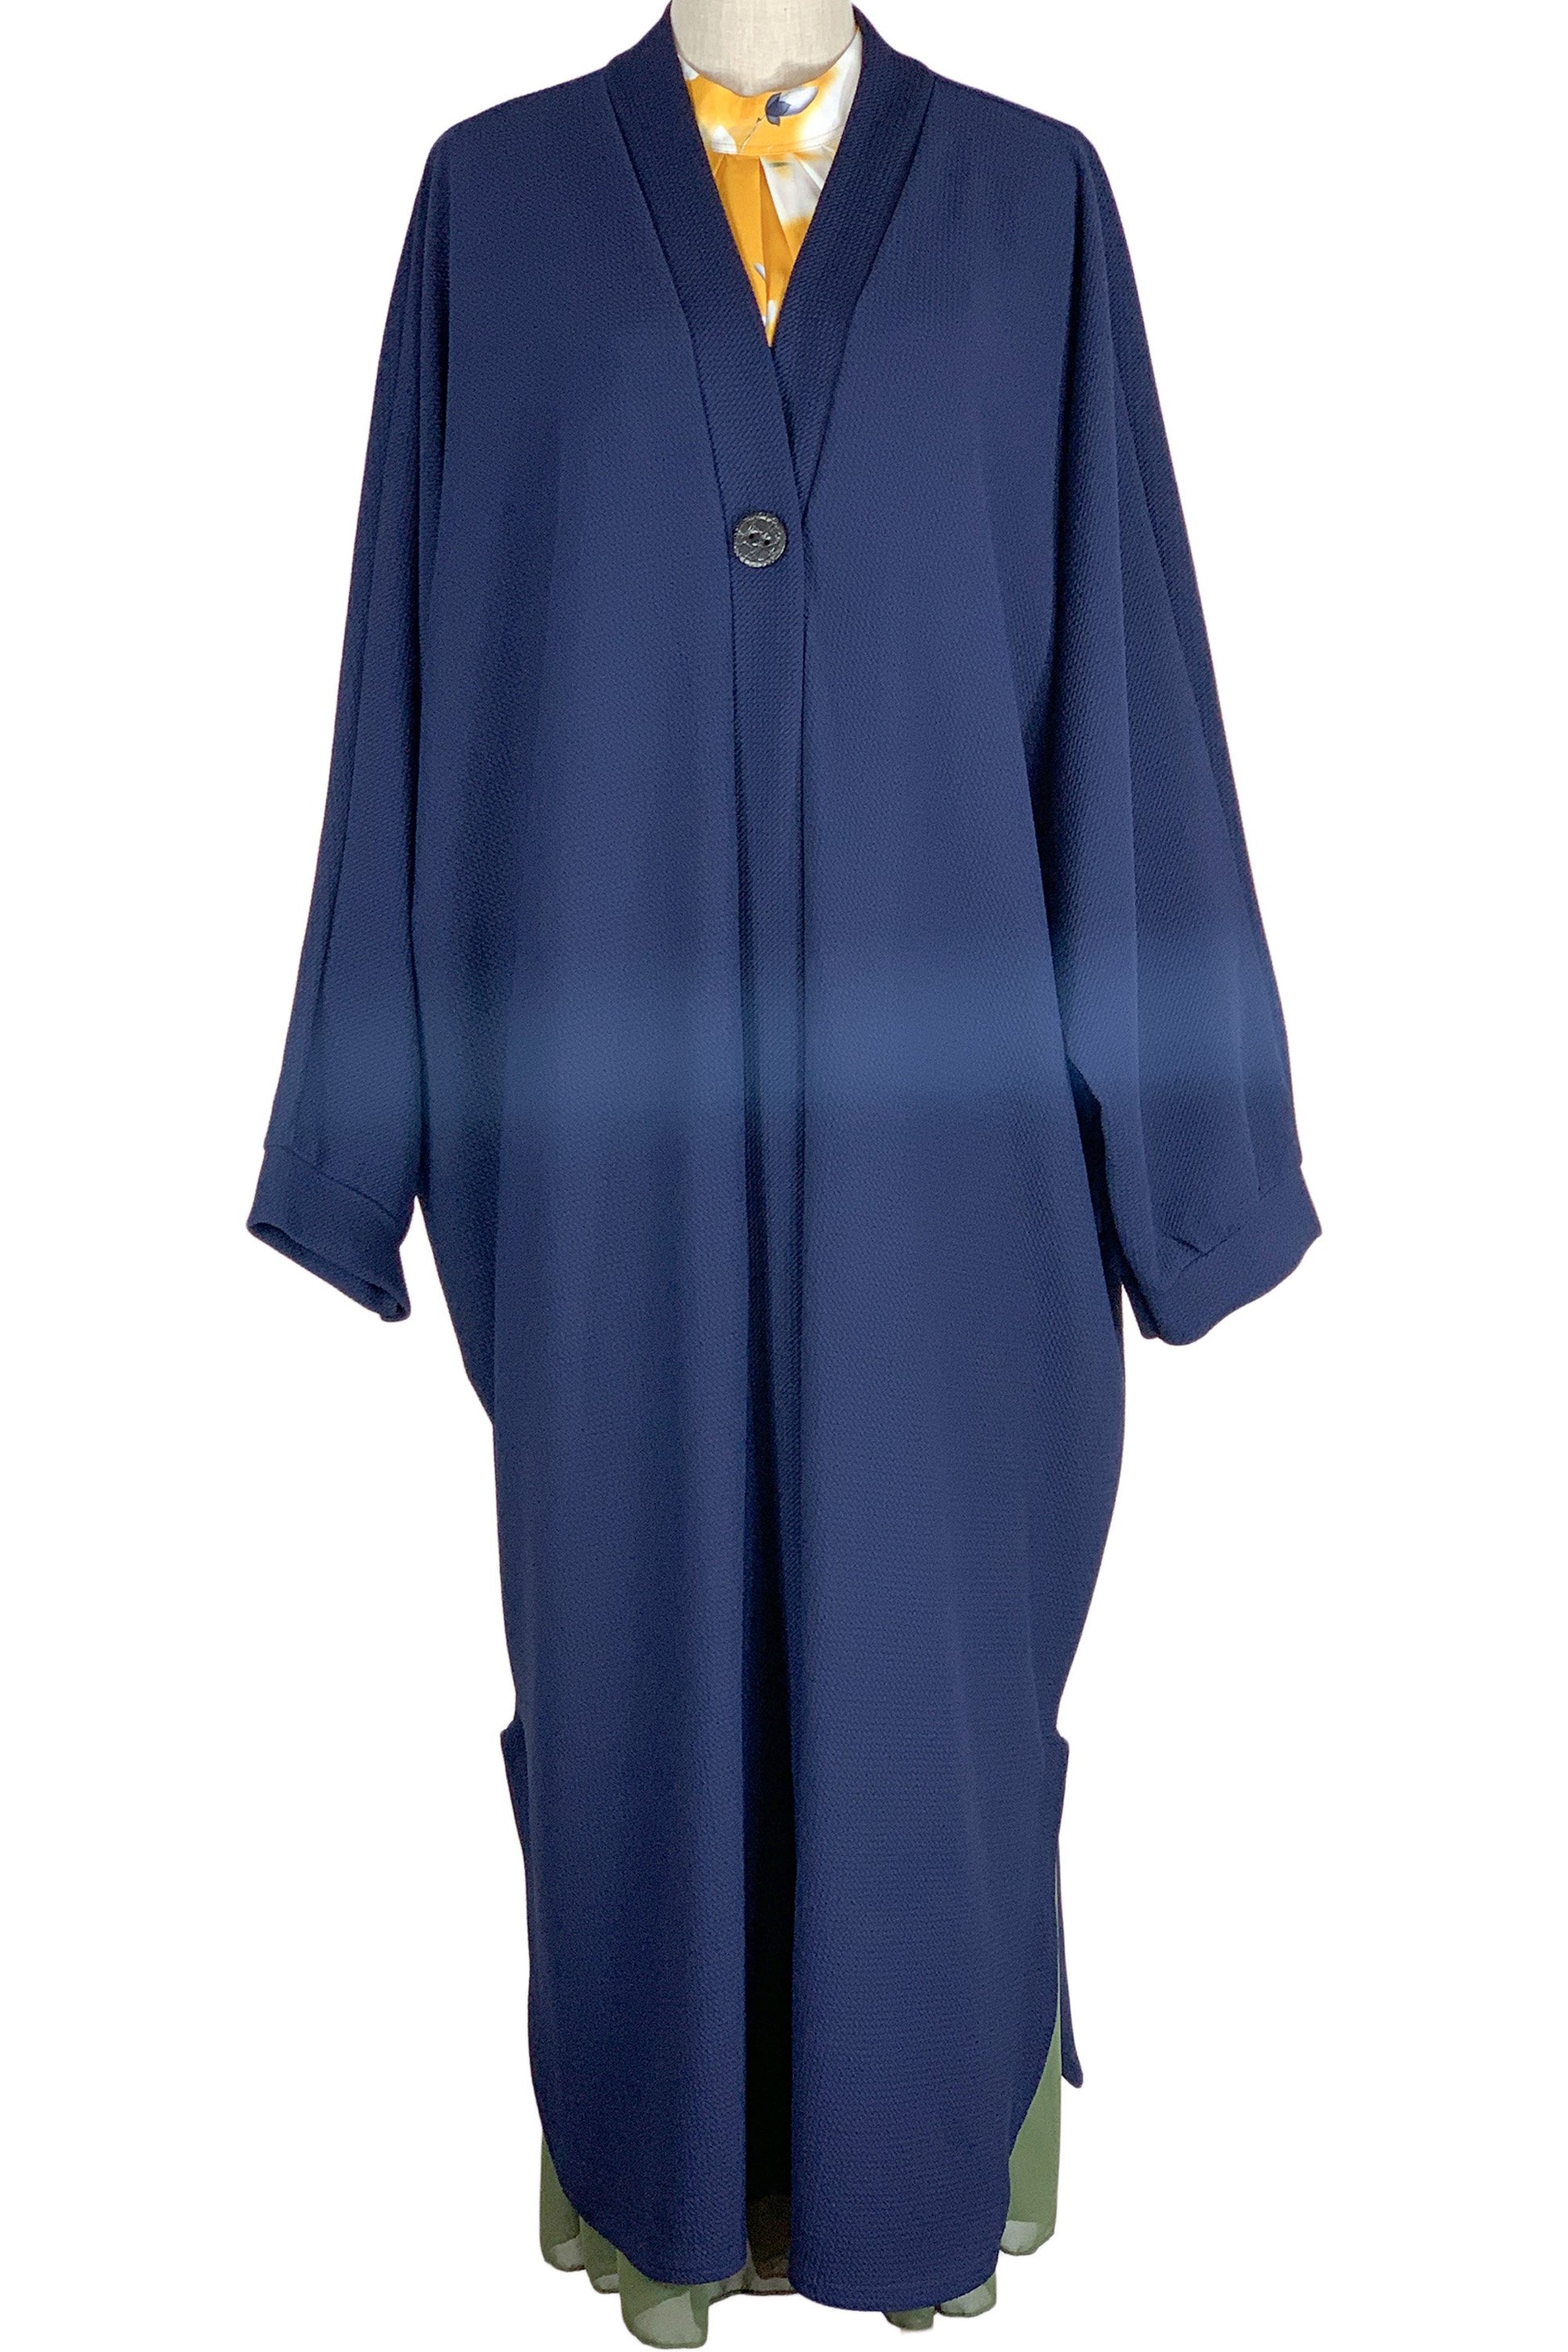 Women's loose free size casual coat- Blue-almanaar Islamic Store